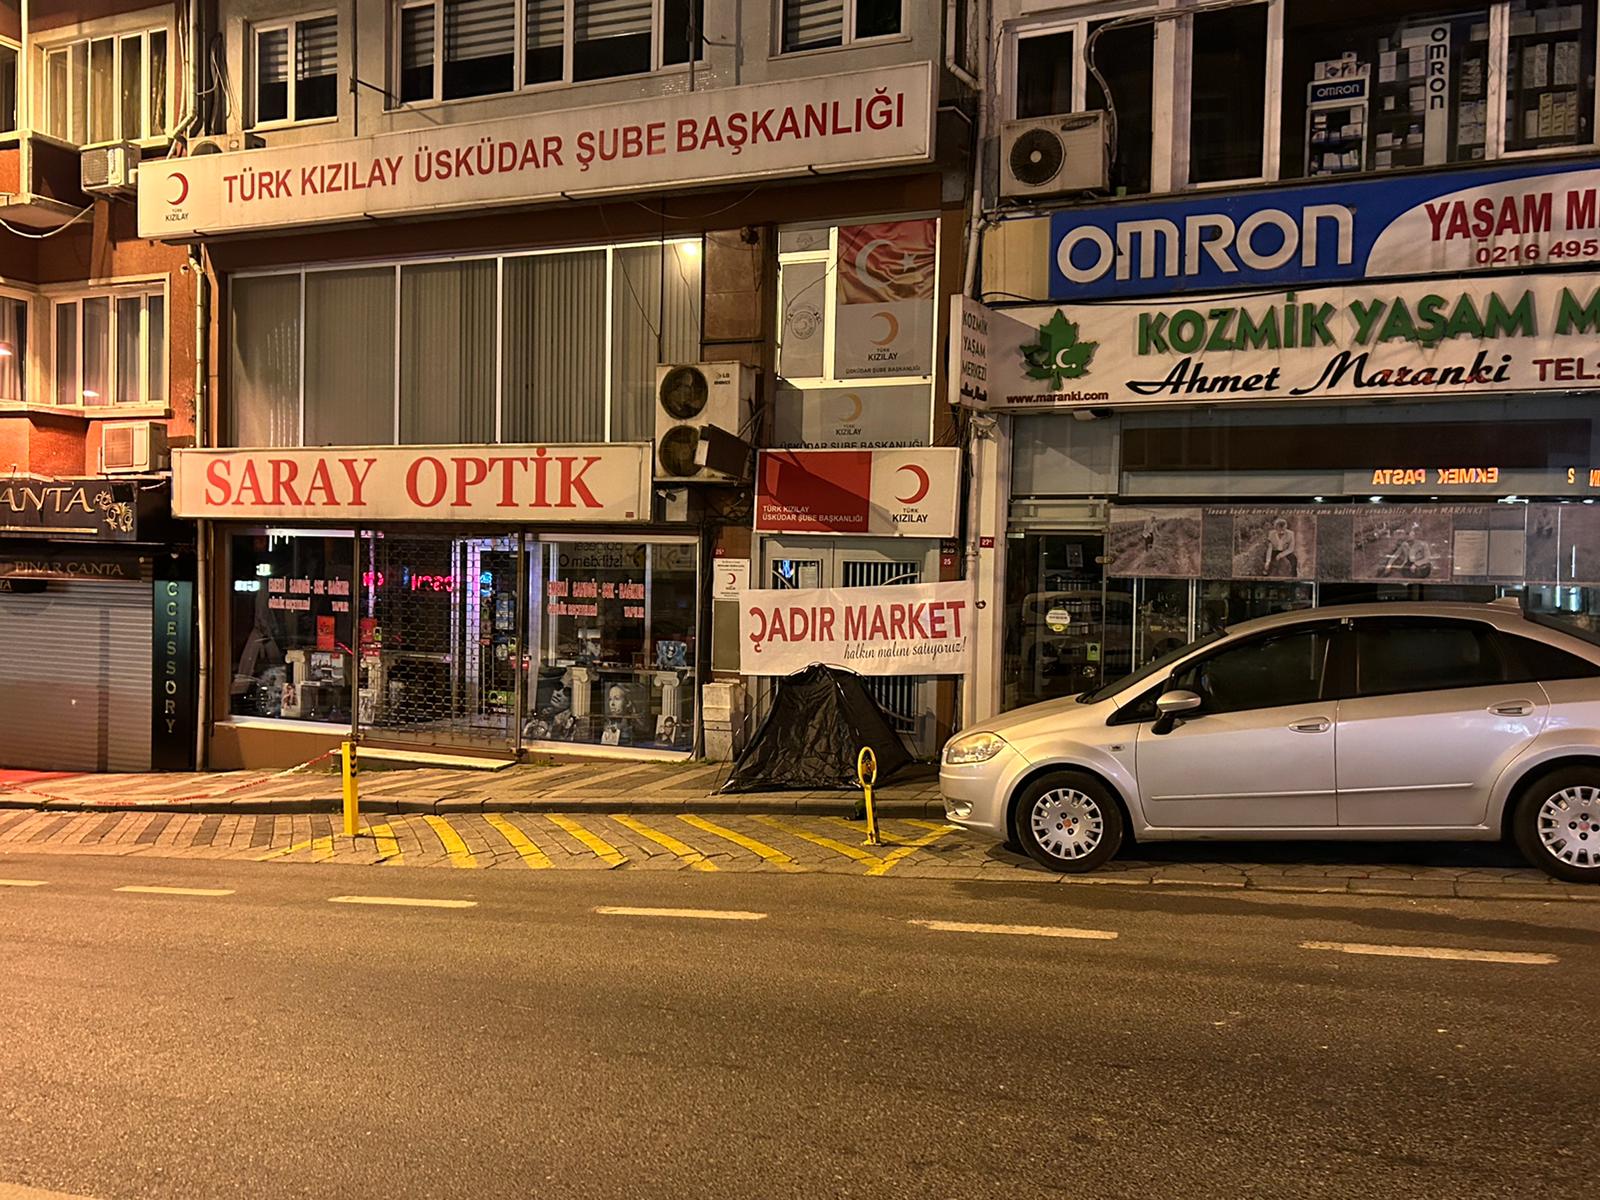 TİP İstanbul İl Örgütü Kızılay’ın kapısına “Çadır market, halkın malını satıyoruz” pankartı astı